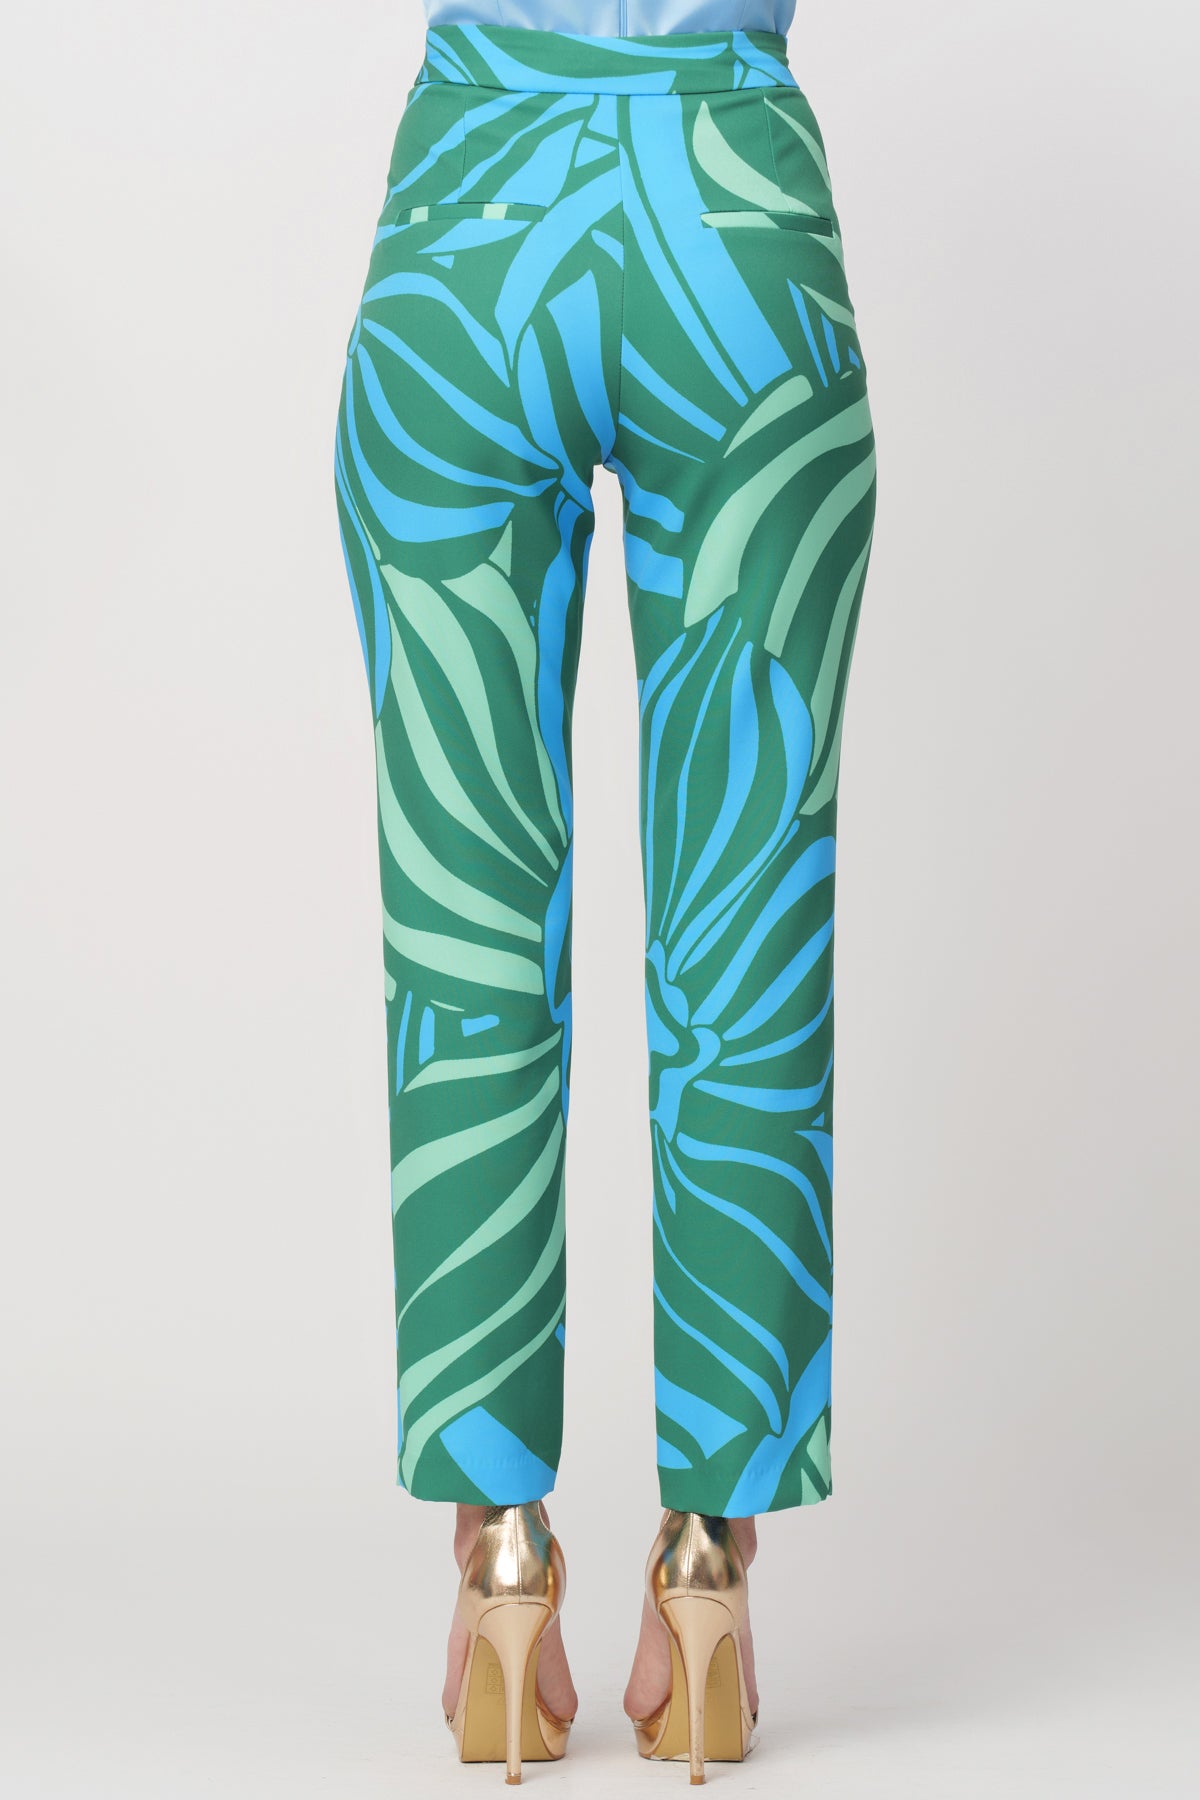 Pantalone Fiji